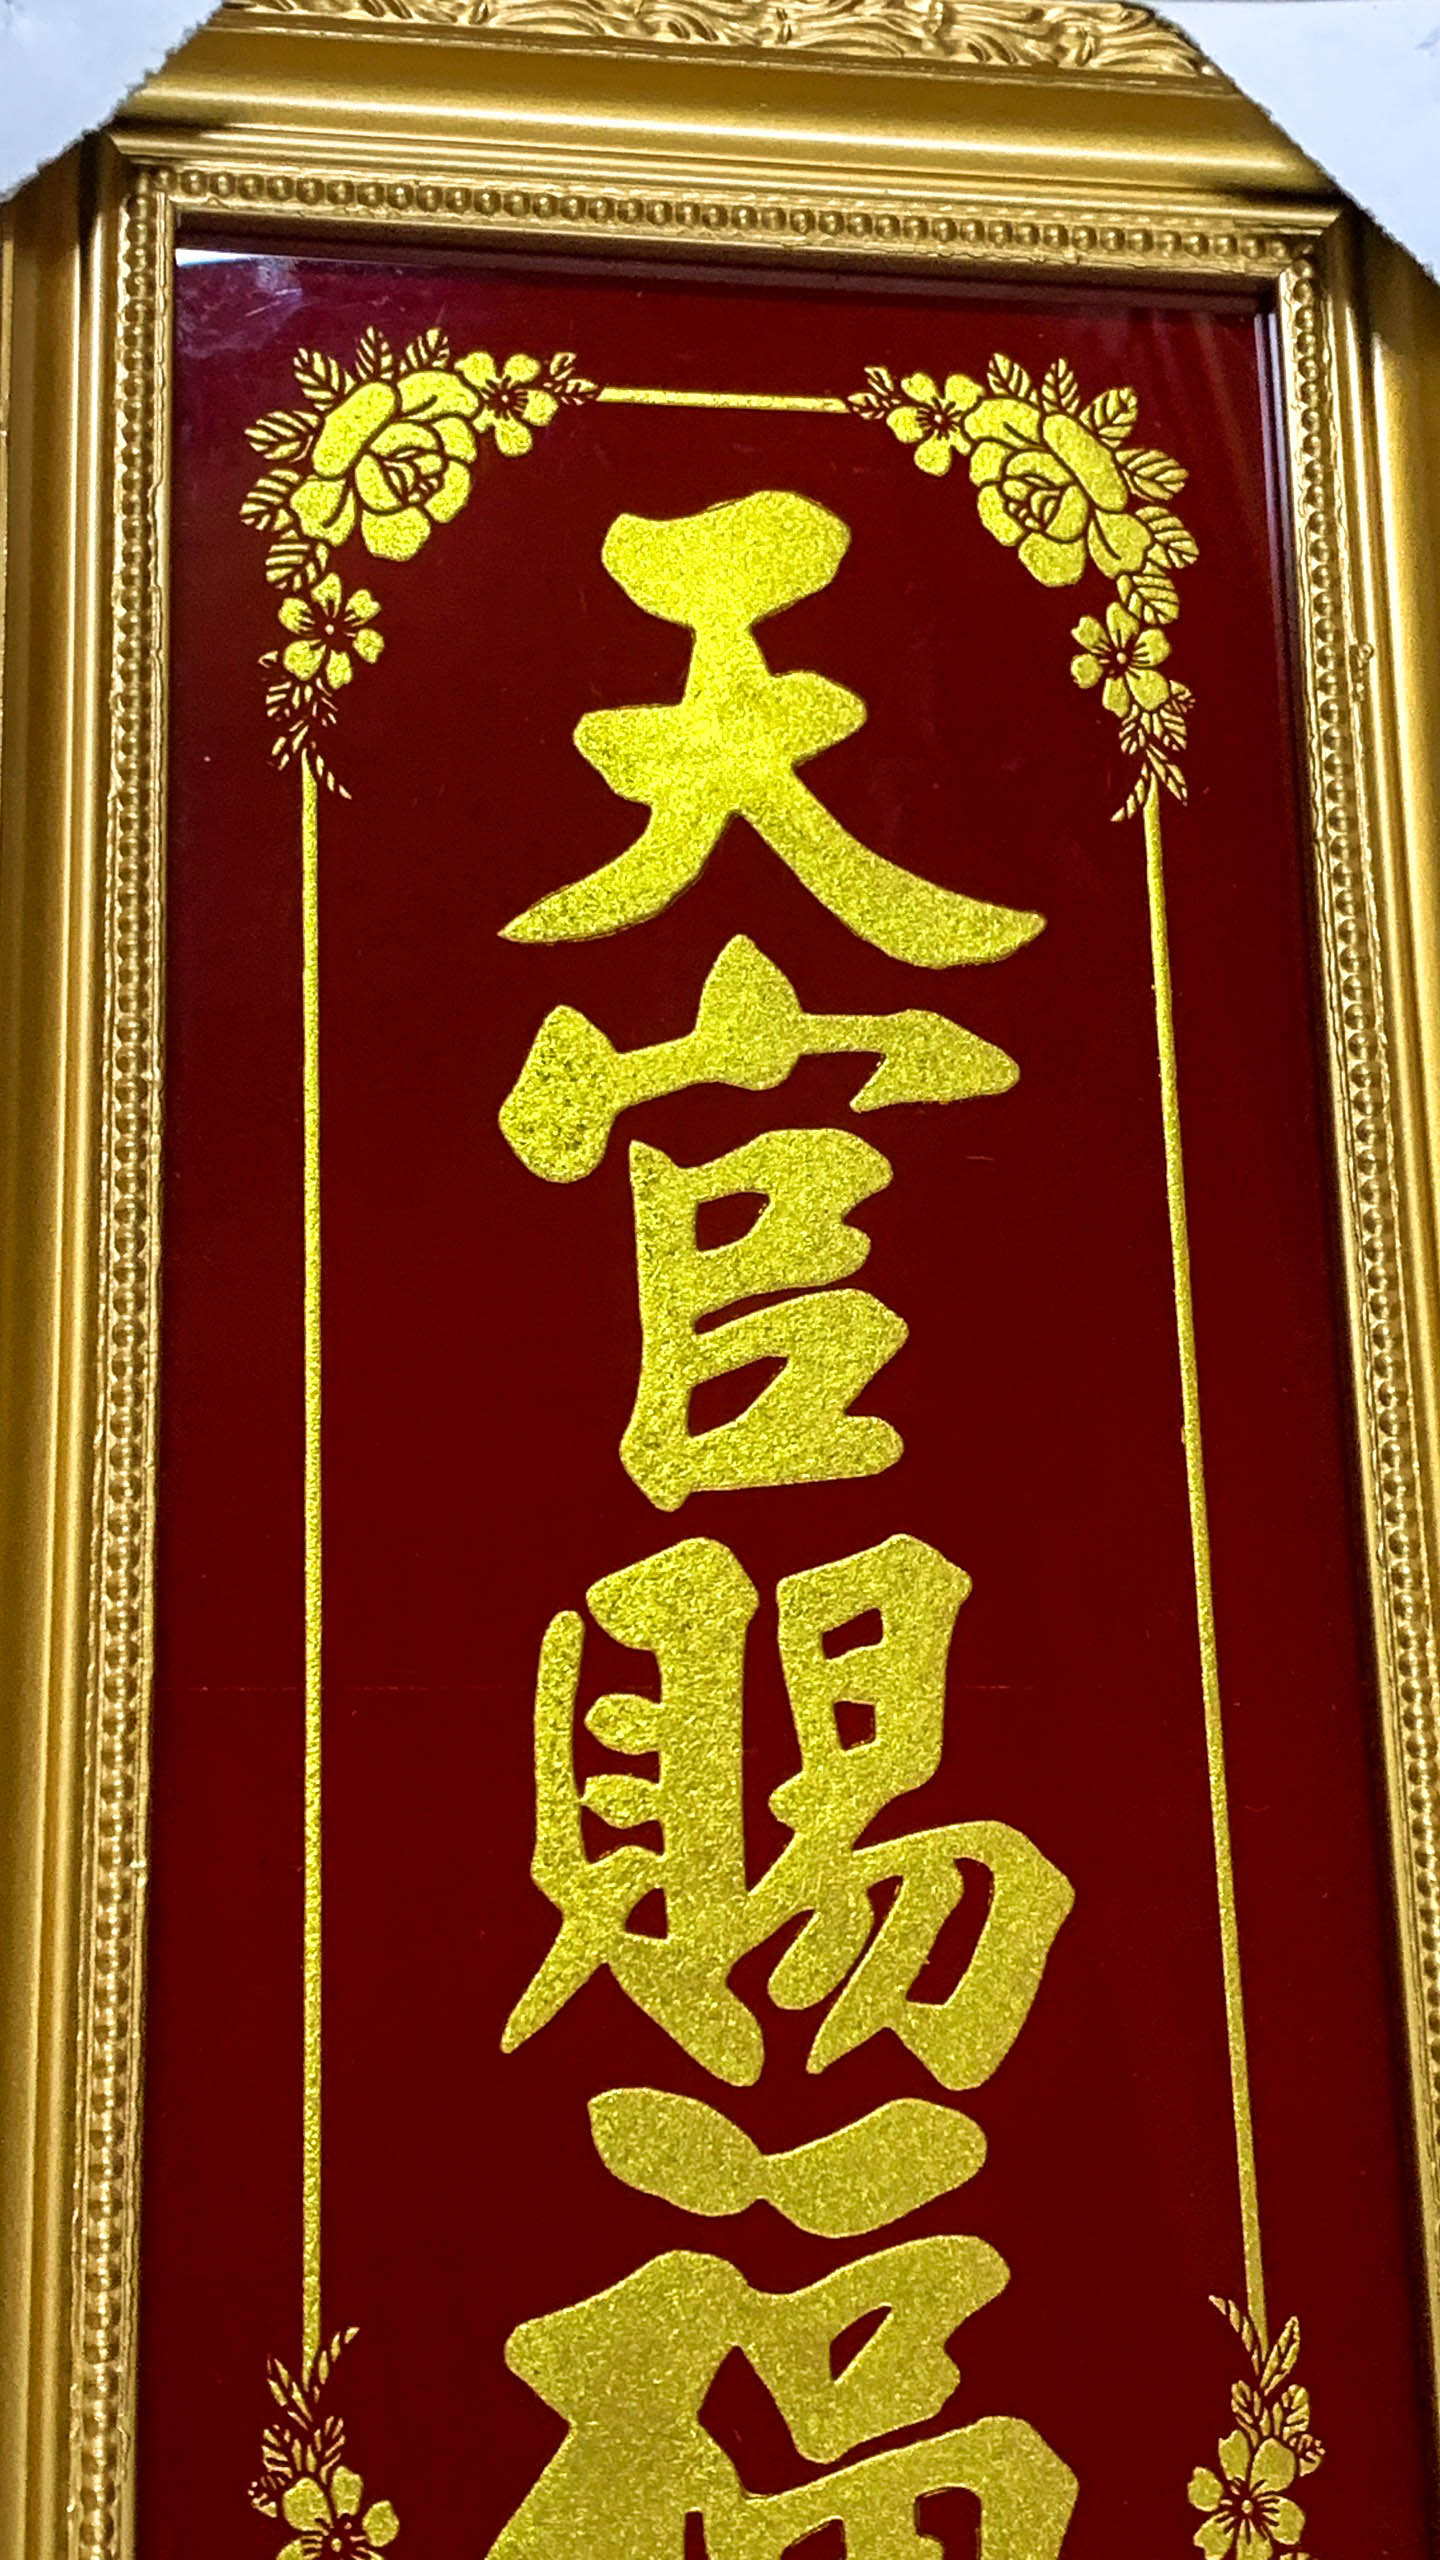 Bài vị thờ ông Táo khắc chữ Vàng - nhũ kim sa - Khung Gỗ - Cao 38cm Ngang 20cm (sản phẩm thủ công)